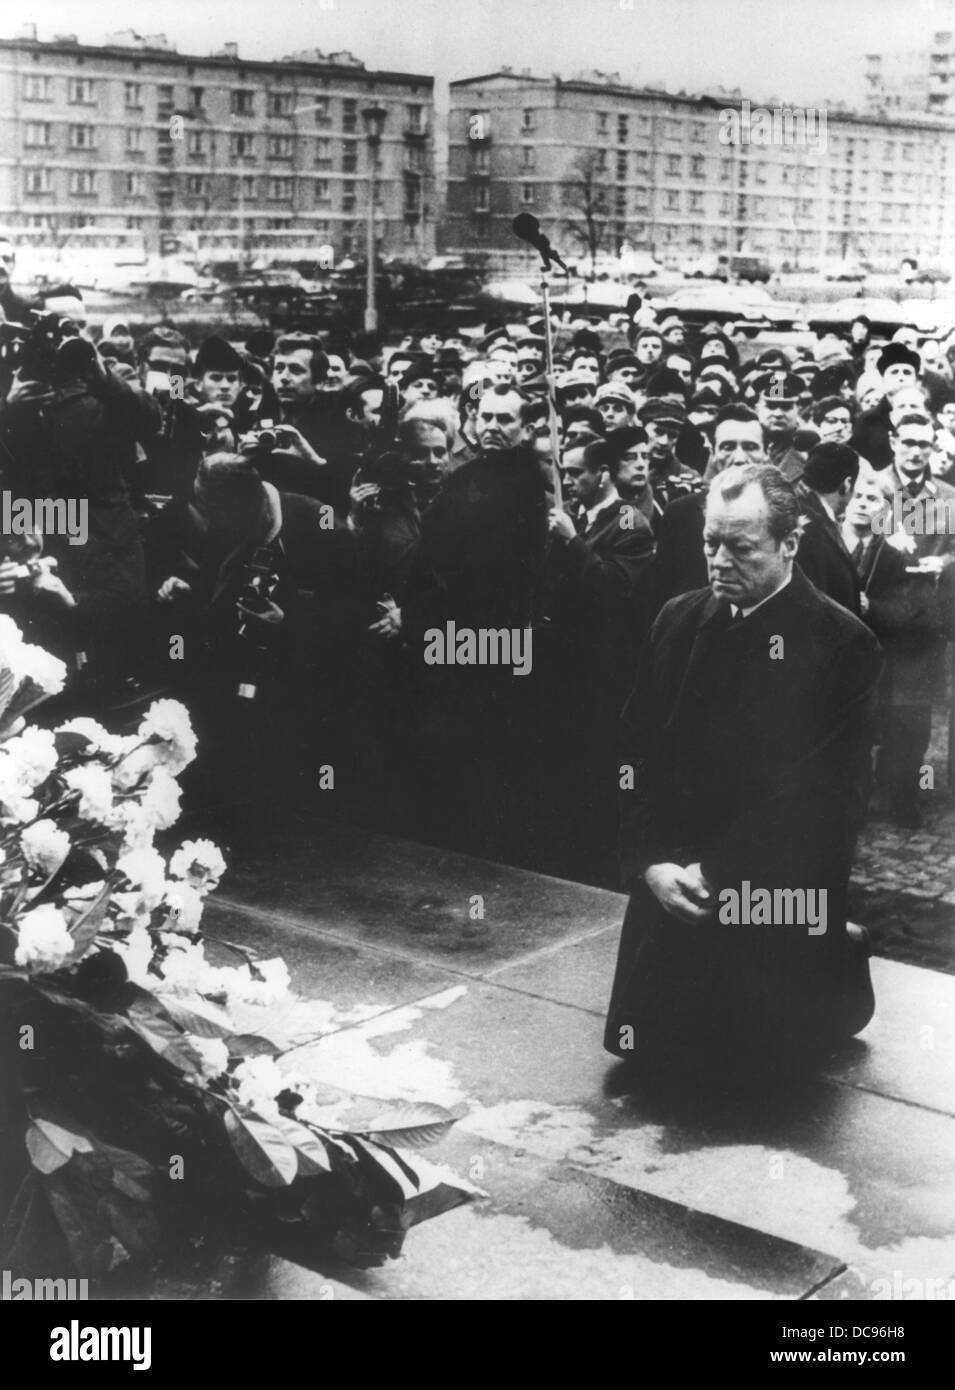 Scena storica: il Cancelliere Willy Brandt le ginocchia verso il basso di fronte al monumento dedicato agli eroi della insurrezione in aprile 1943, nell'ex ghetto di Varsavia il 7 dicembre nel 1970. Foto Stock